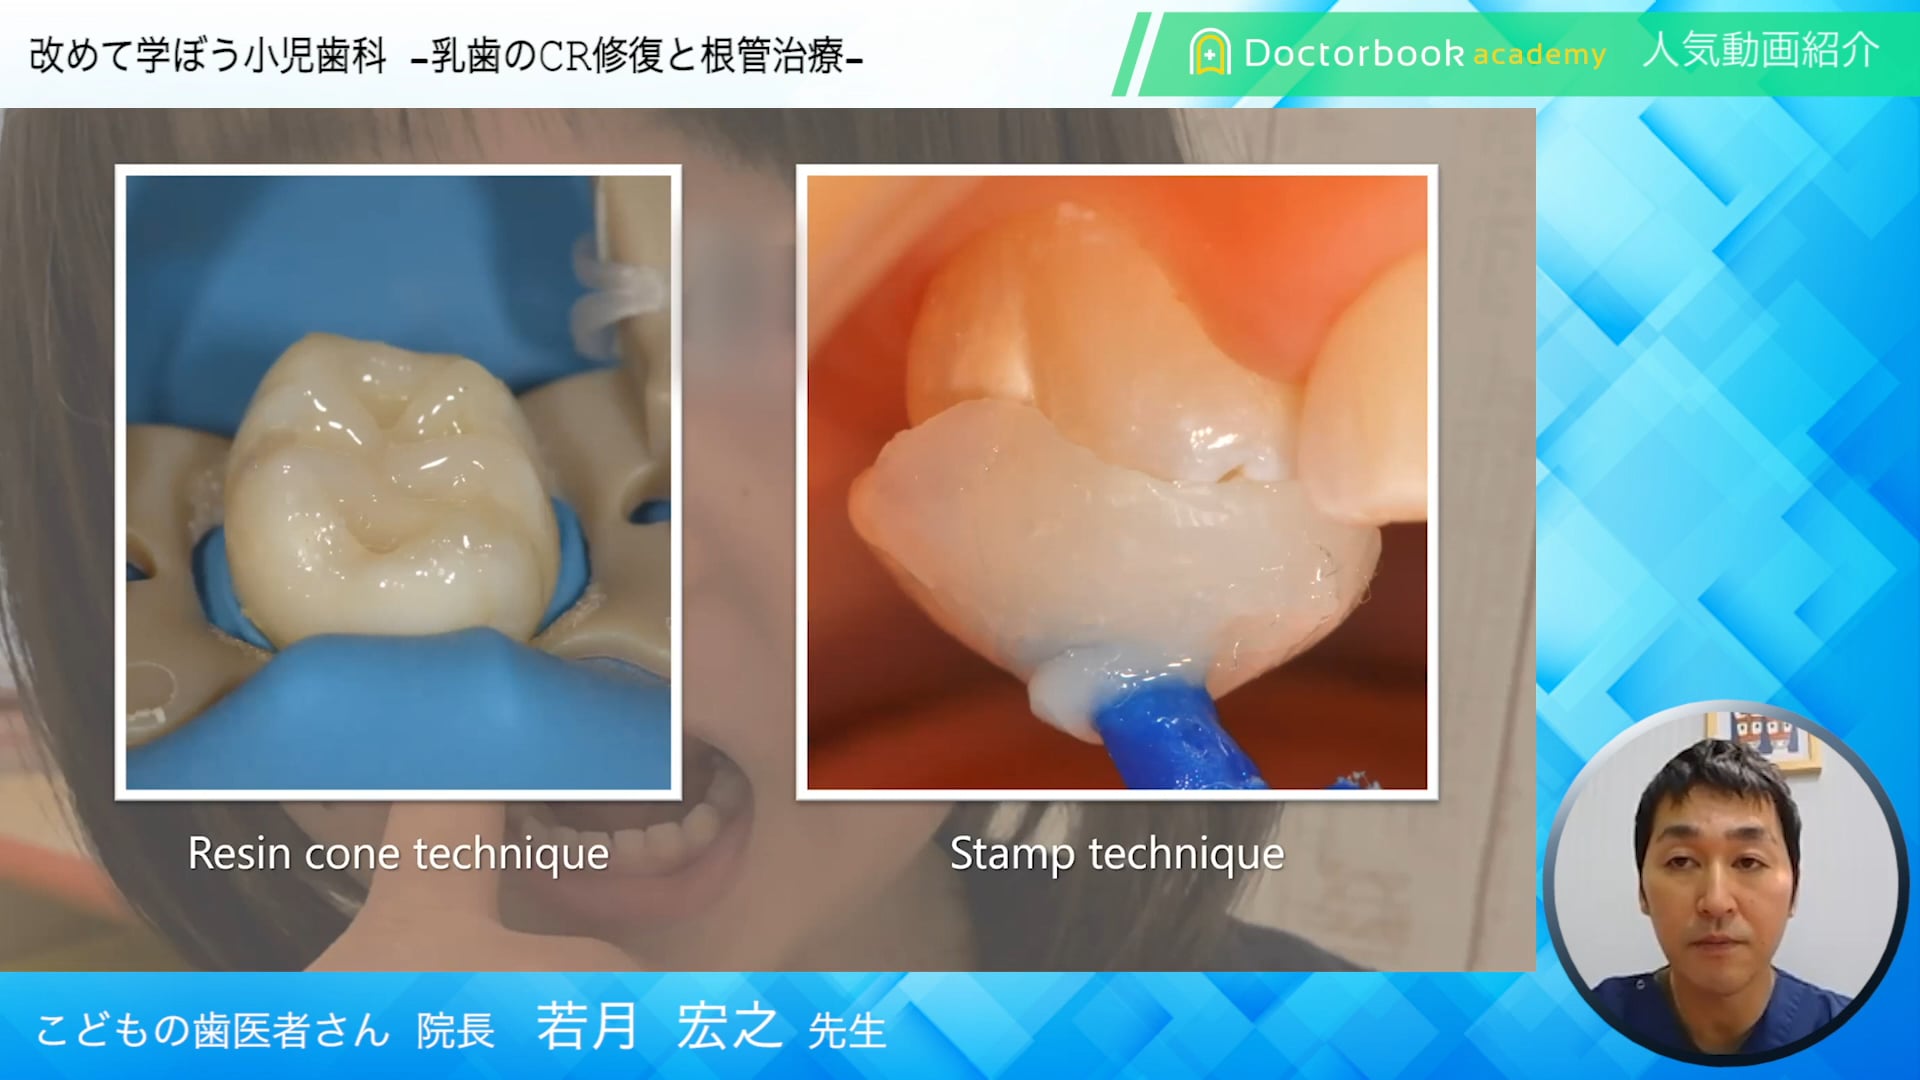 【Doctorbook academy 人気動画紹介】改めて学ぼう小児歯科 乳歯のCR修復と根管治療